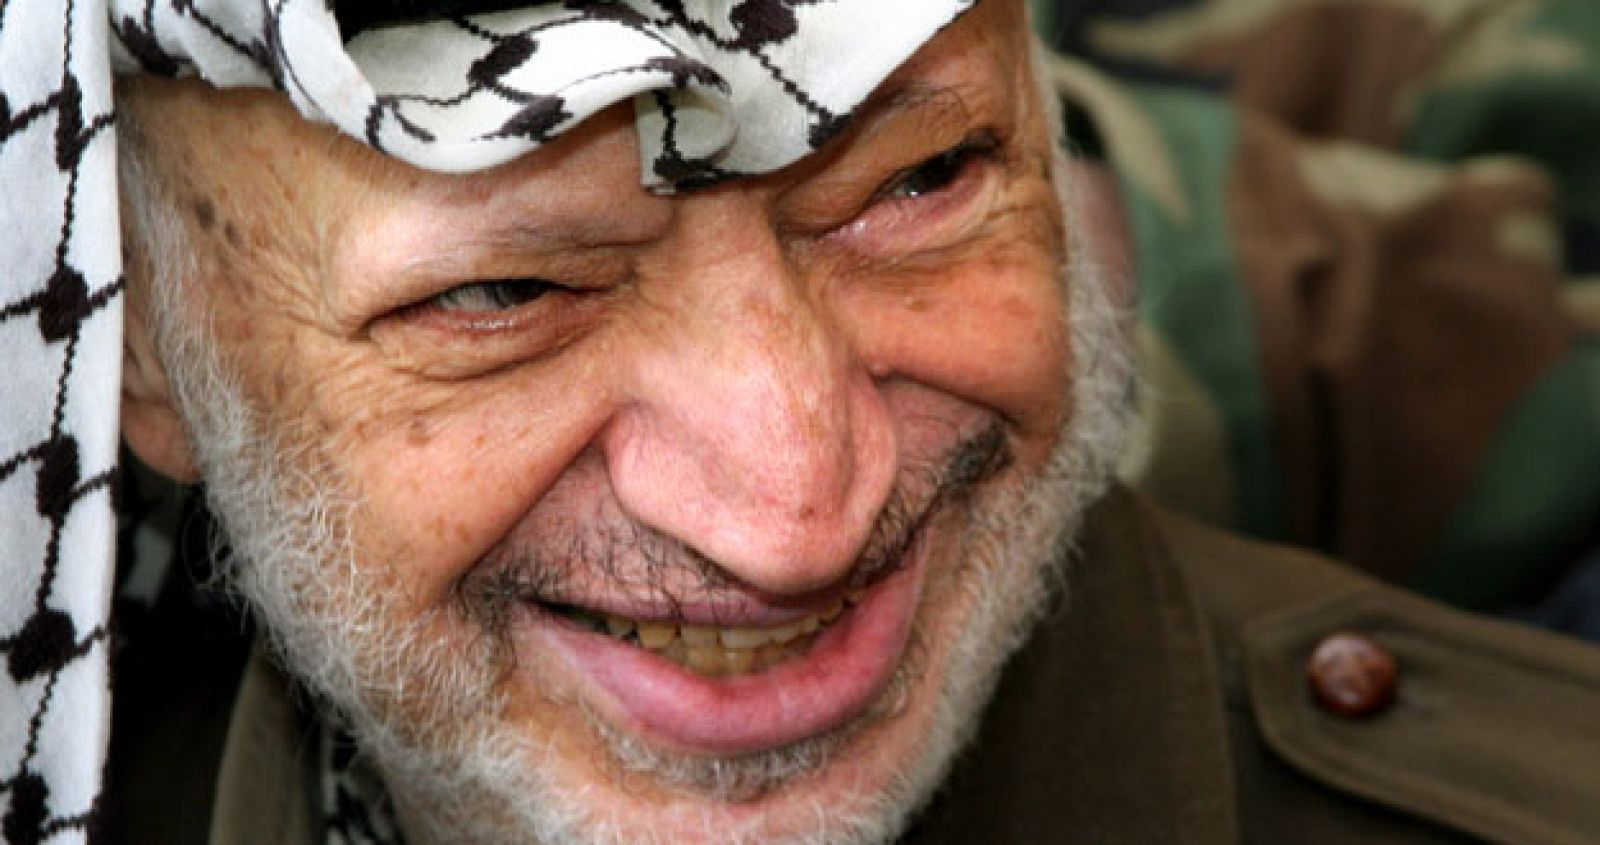 Yaser Arafat murió el 11 de noviembre de 2004, según el comunicado oficial de la Autoridad Nacional Palestina.